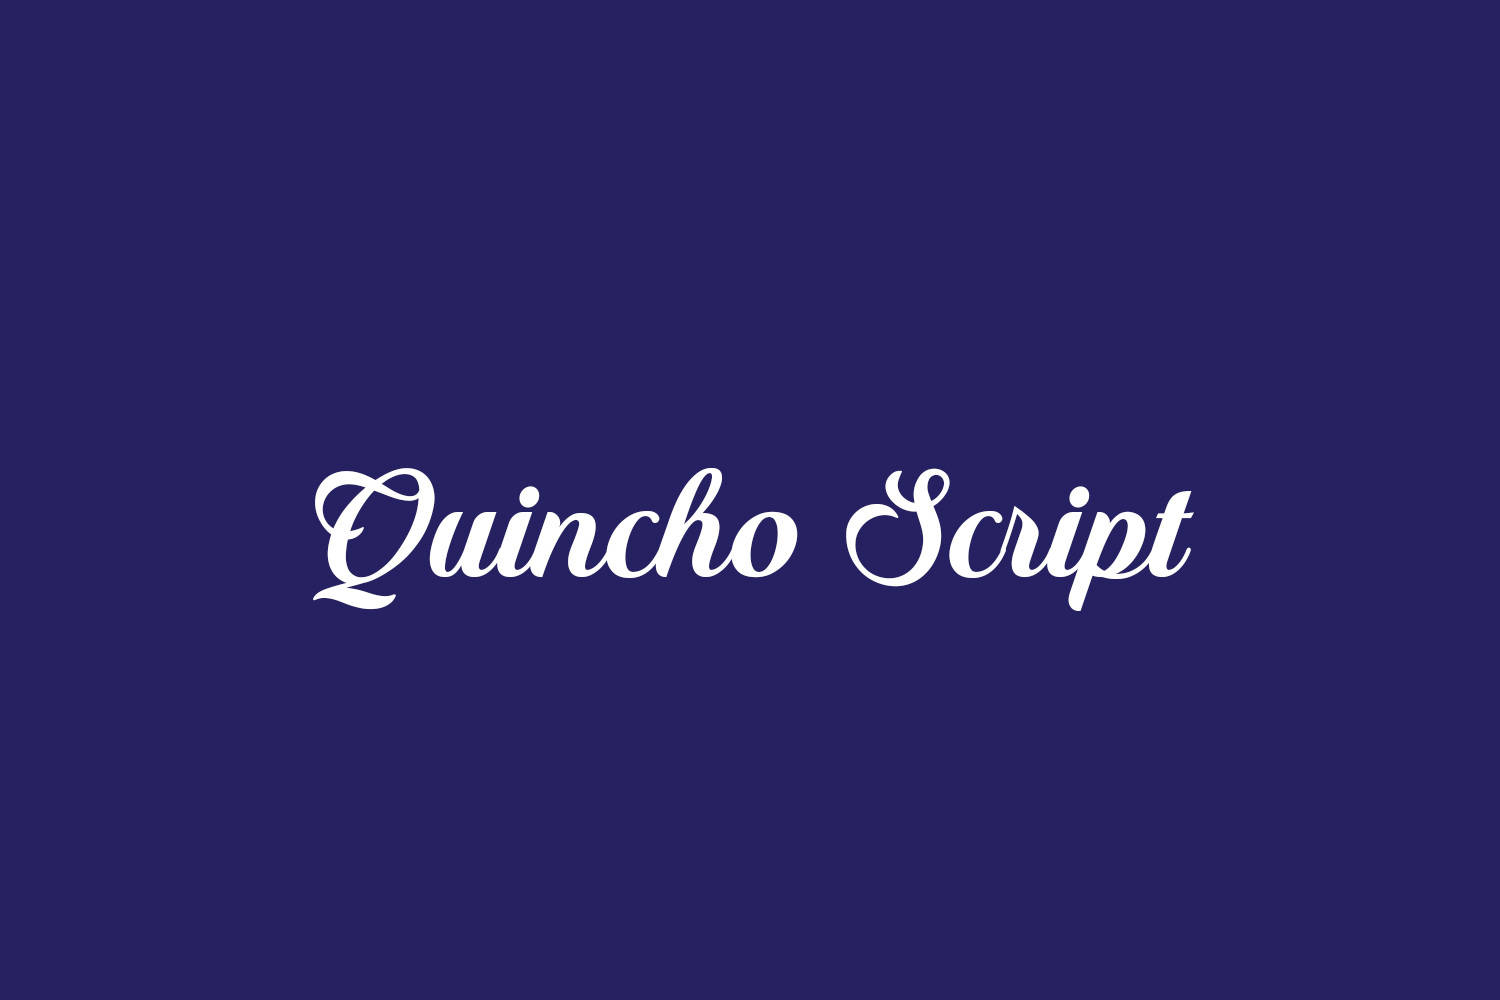 Quincho Script Free Font